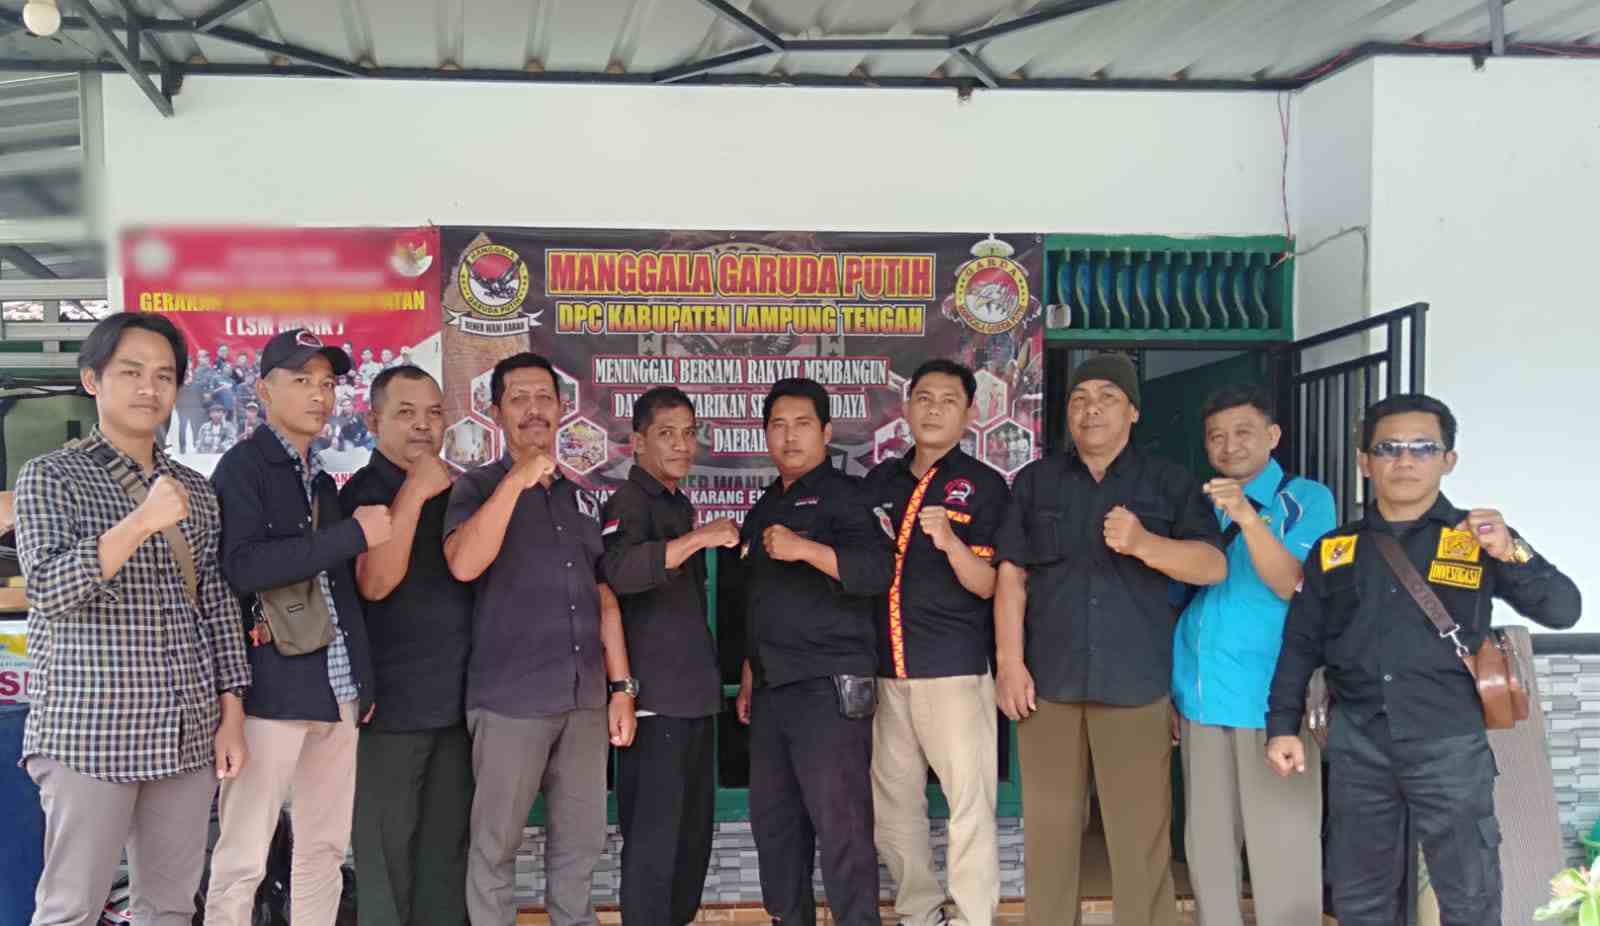 Gubernur Lampung Arinal Bersama Bupati Winarti Lakukan Restocking 1 Juta Benih Ikan